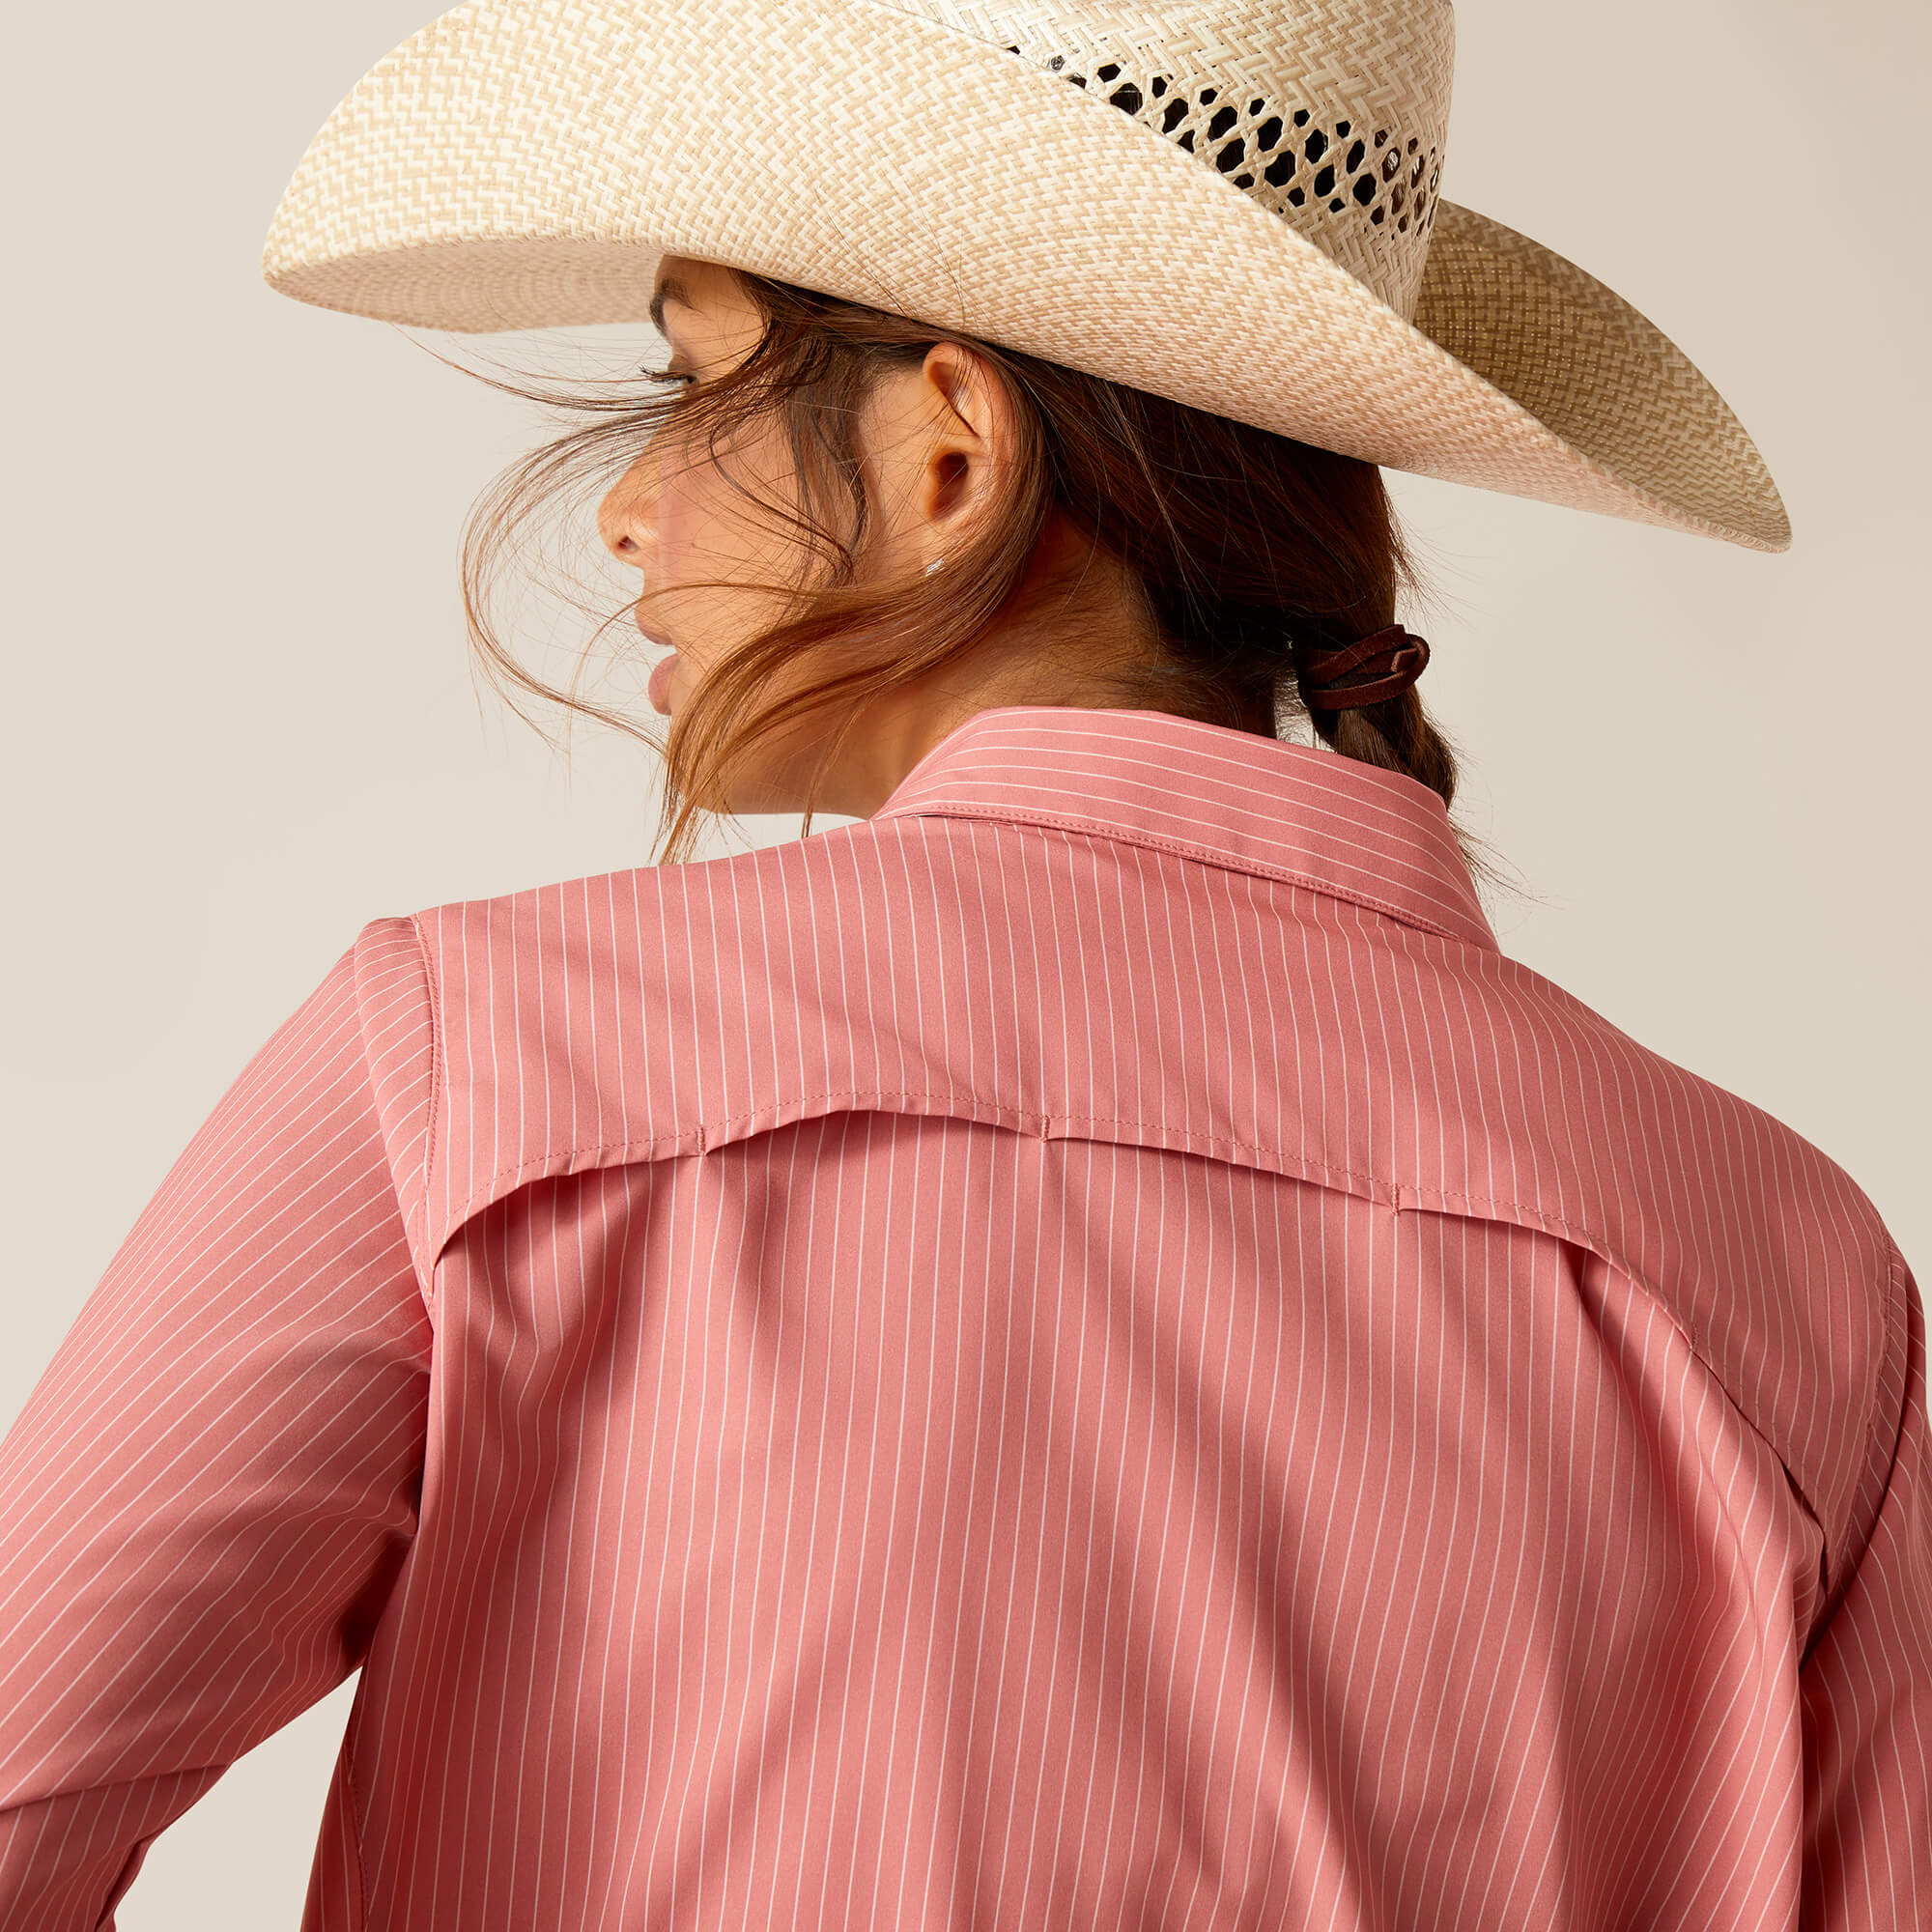 chemise pour l'équitation western pour femme de marque ariat modèle venteck de couleur rose